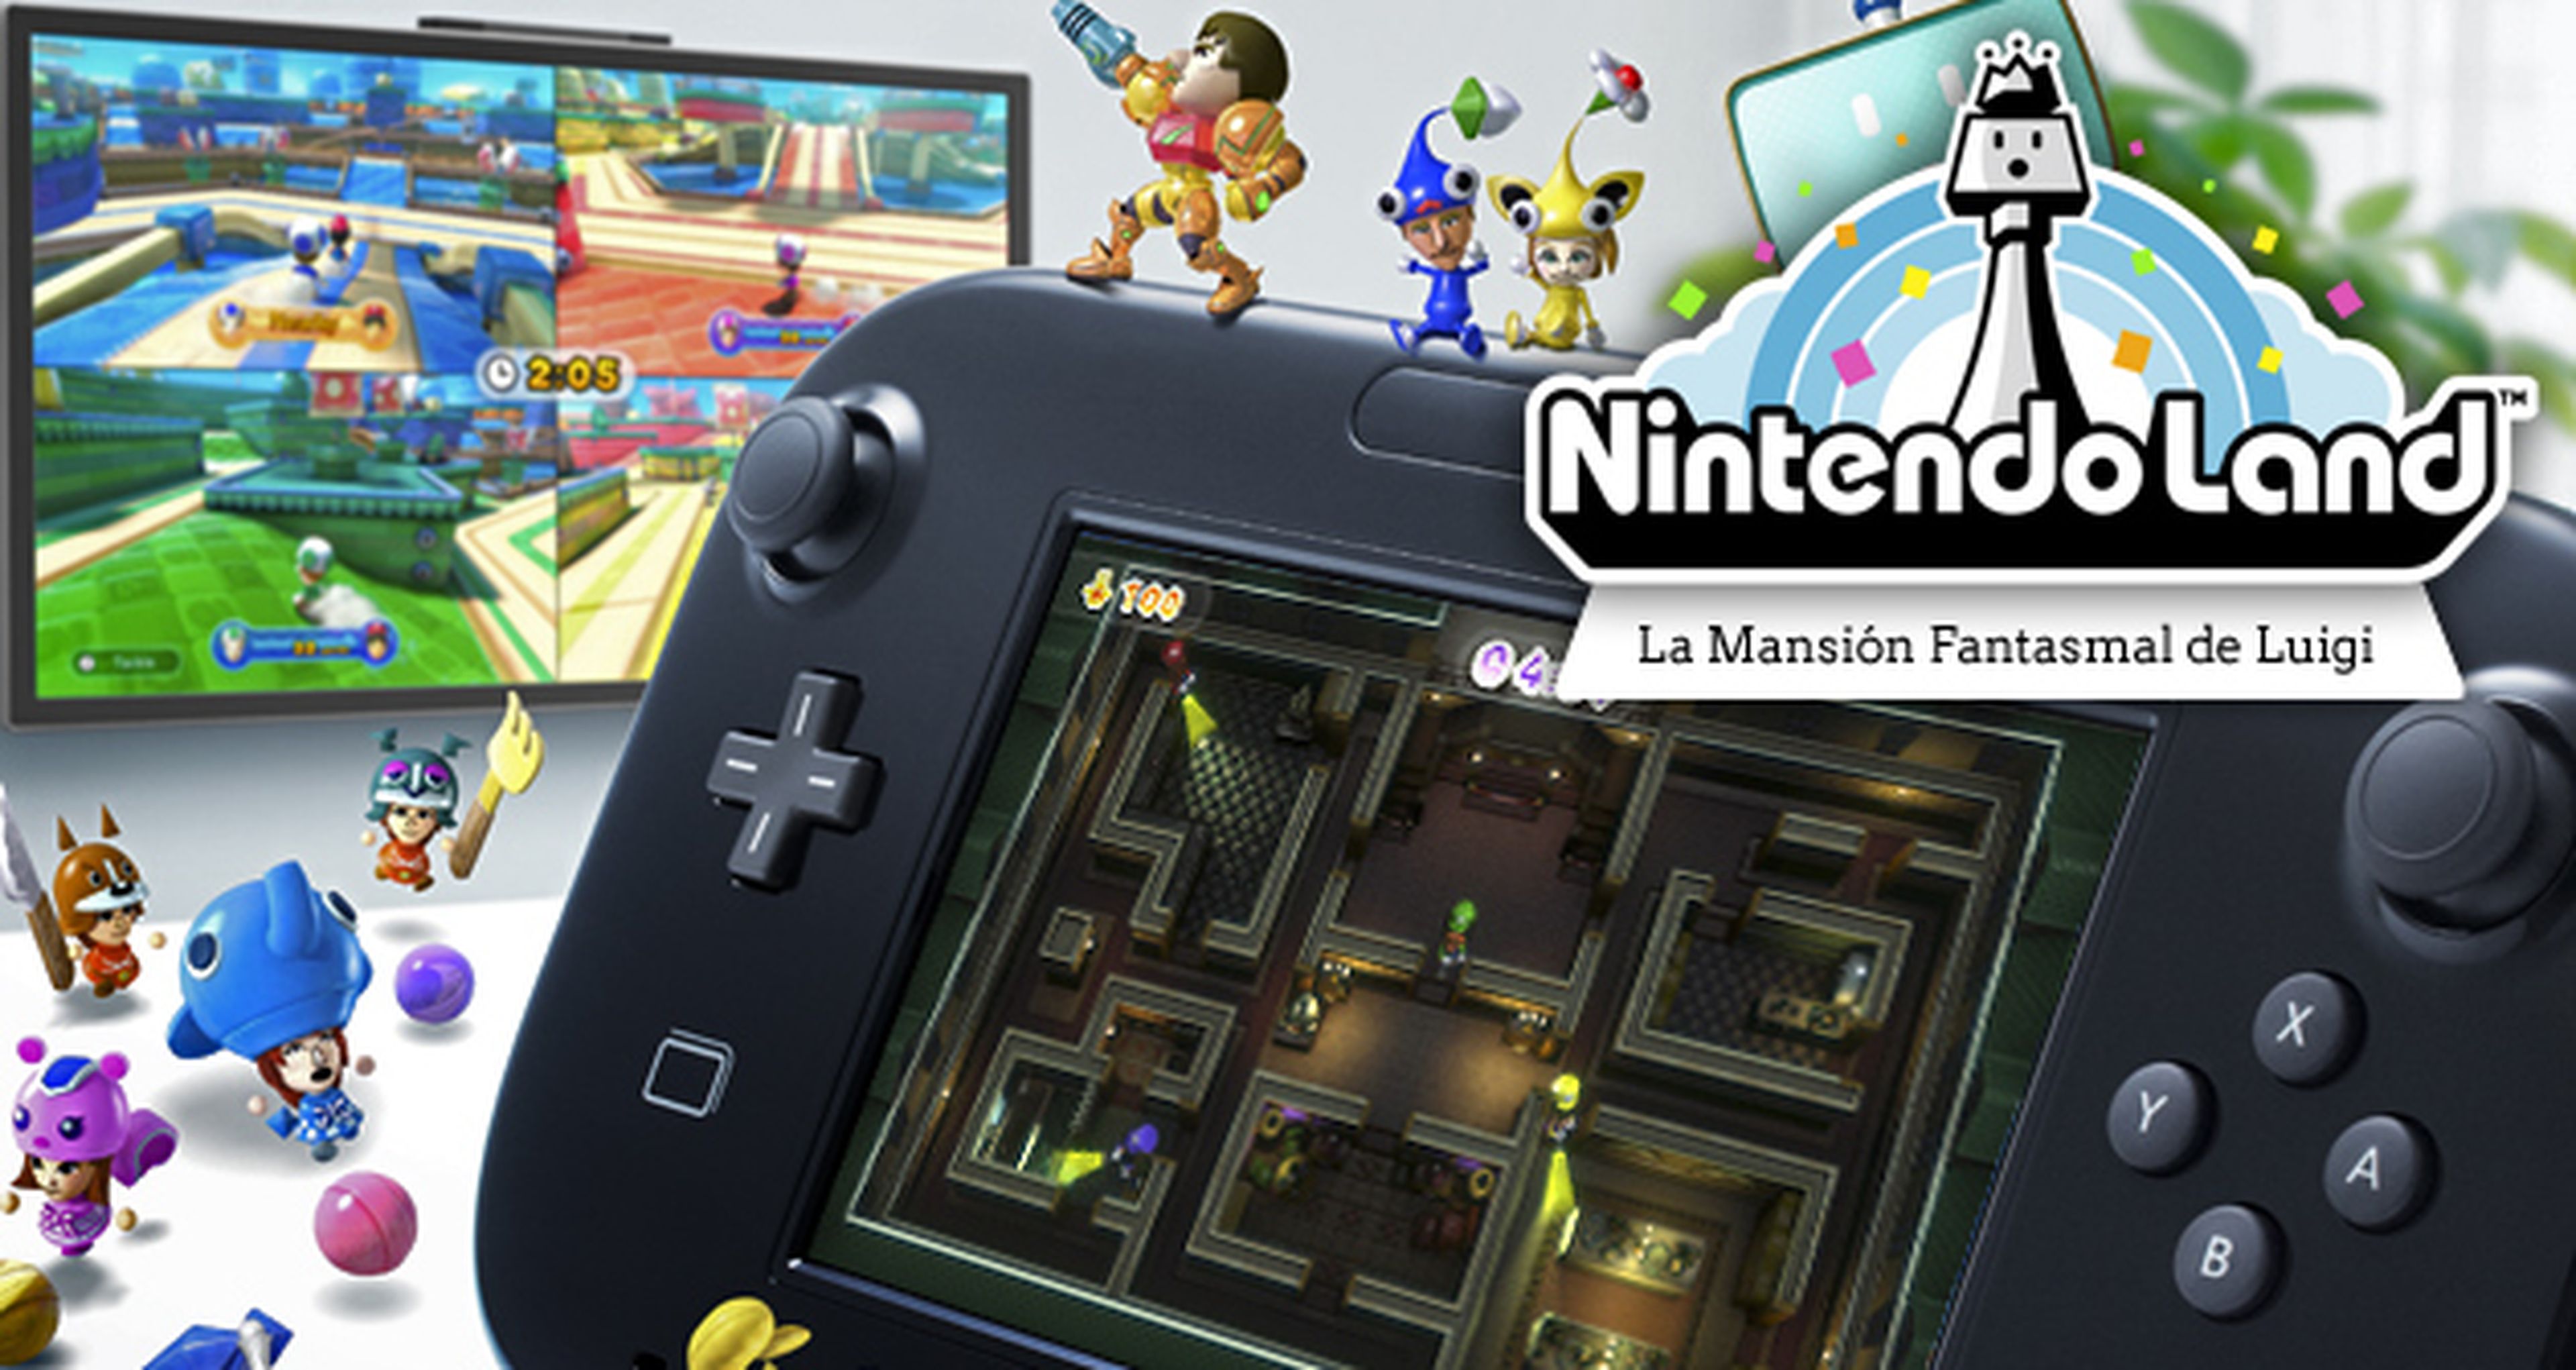 Nintendo Land: La mansión fantasmal de Luigi